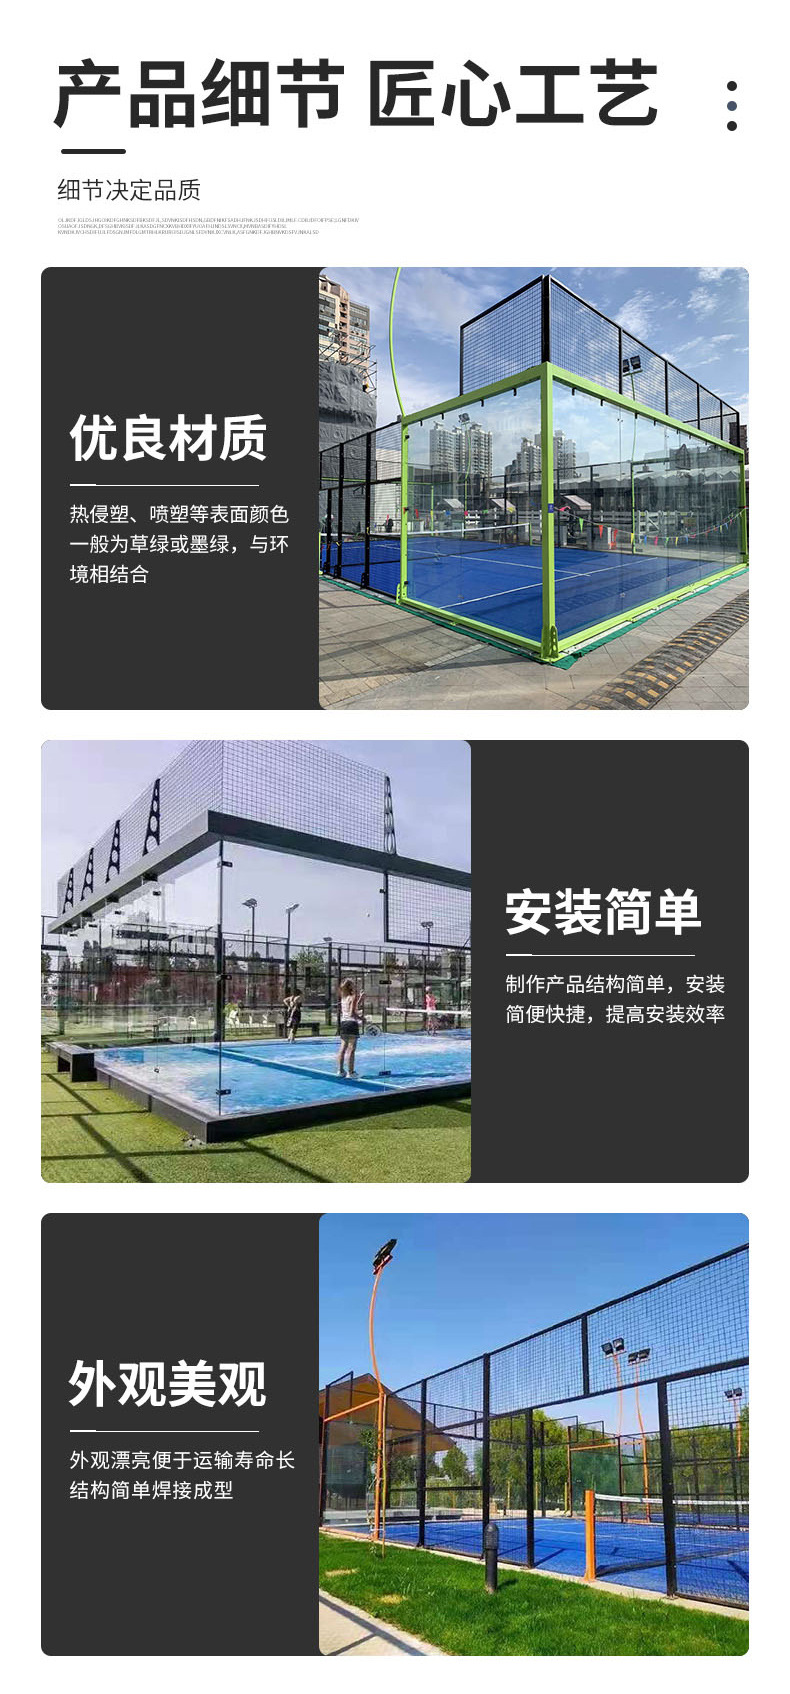 全景帕德尔板式网球场生产厂家名图体育 (图1)